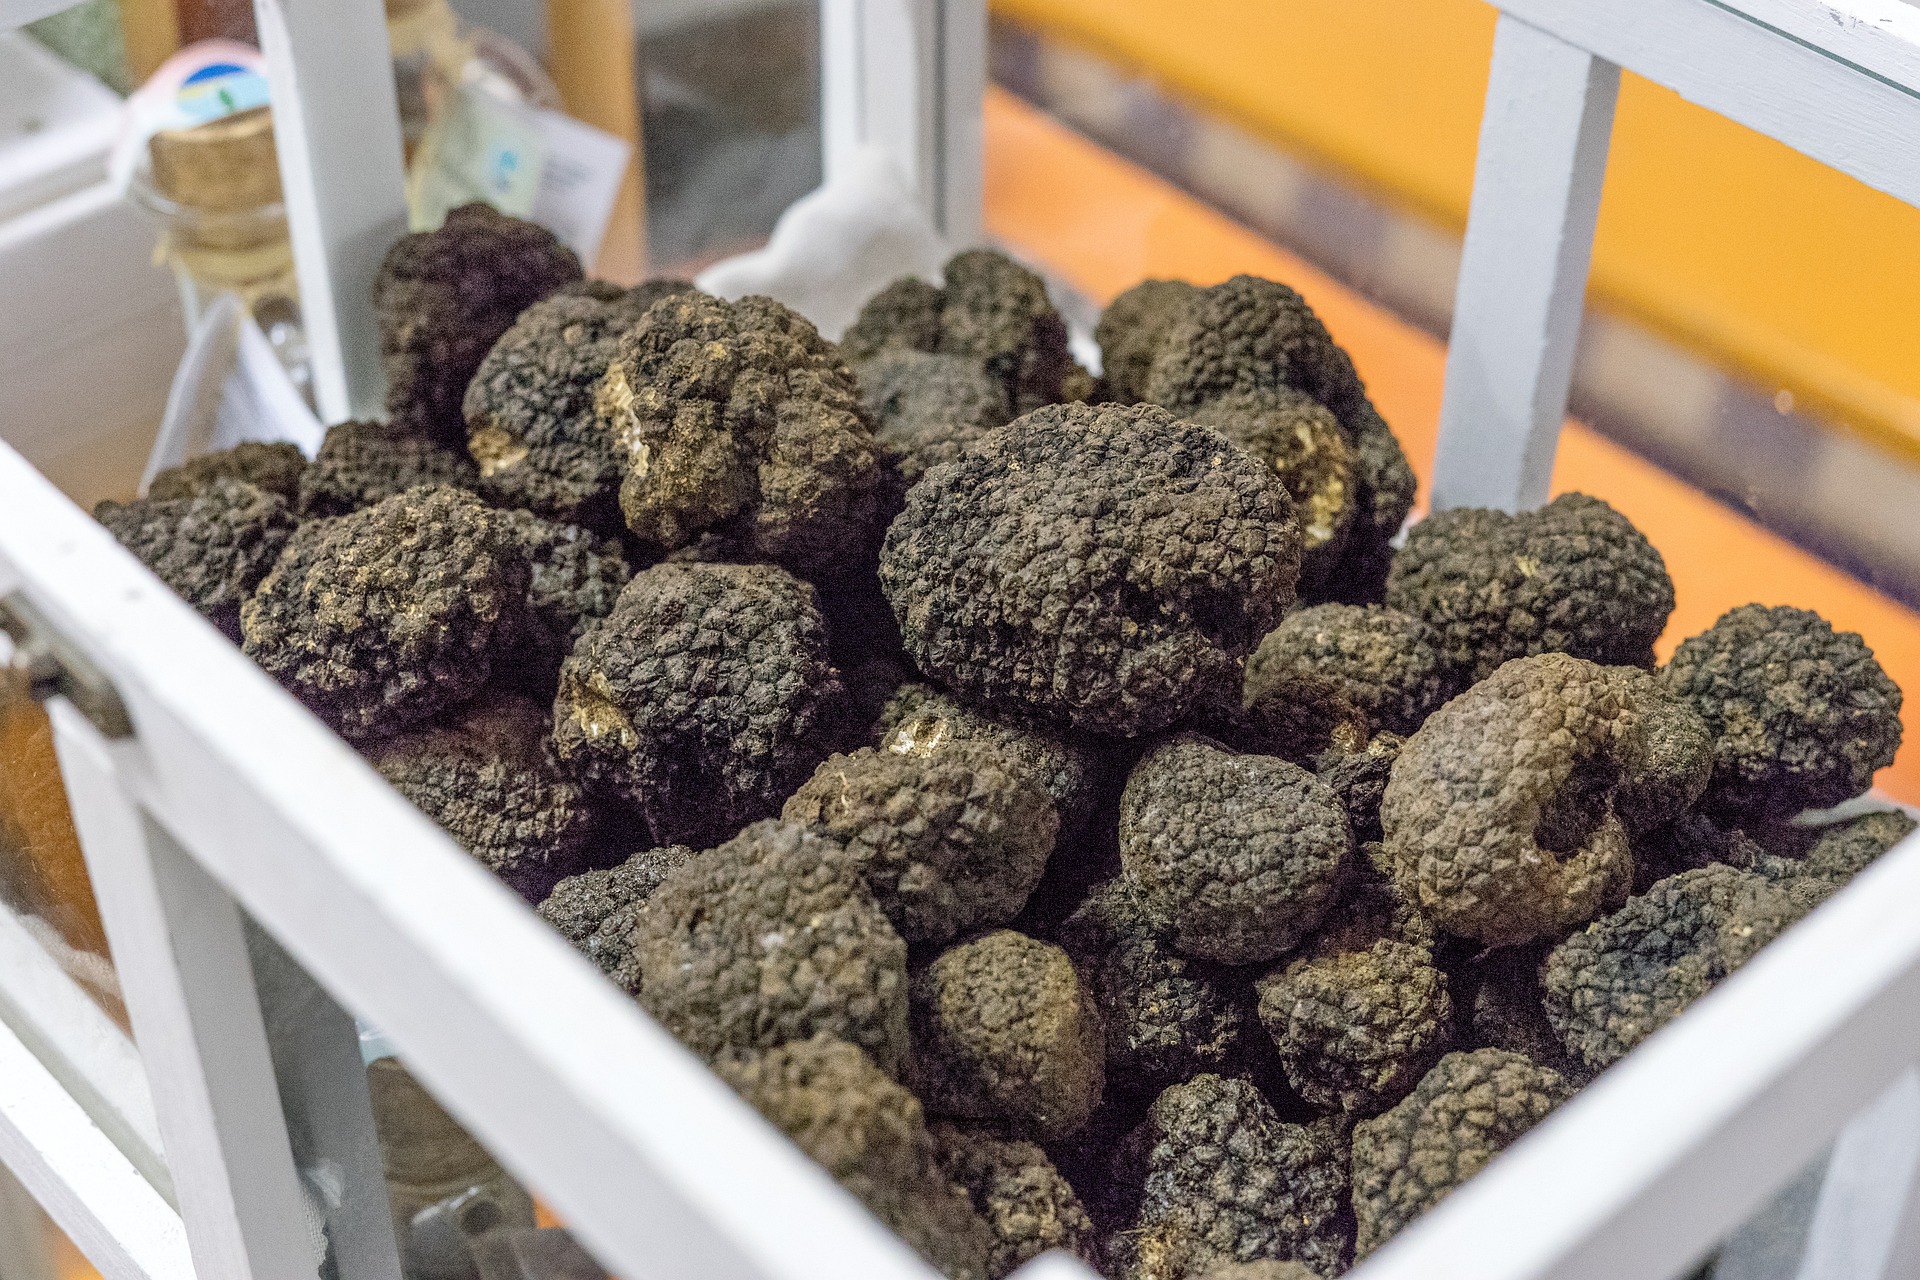 A box of freshly foraged truffles